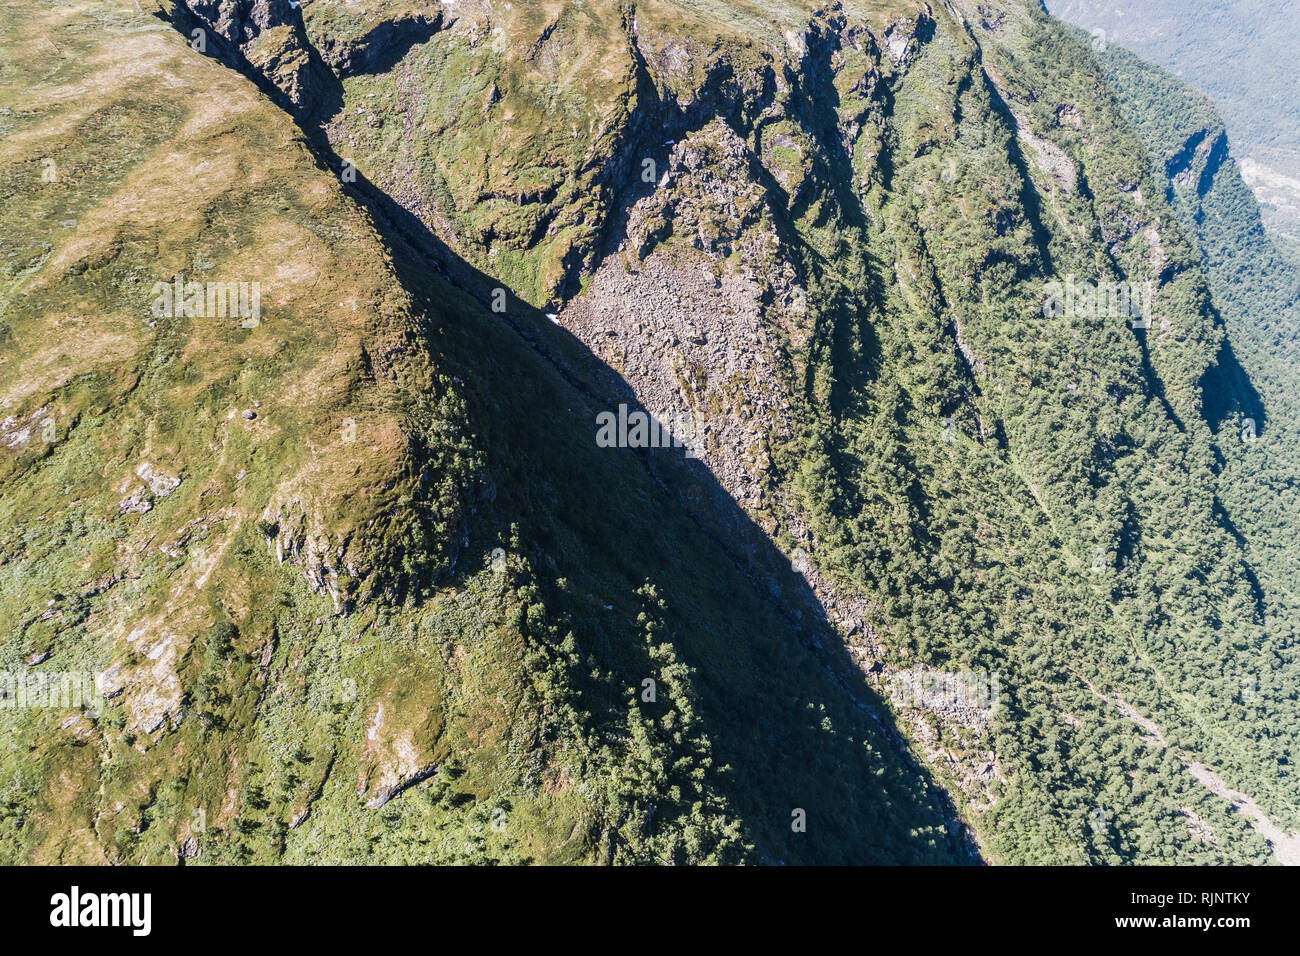 Jotunheimen mountains, Norway, Europe Stock Photo